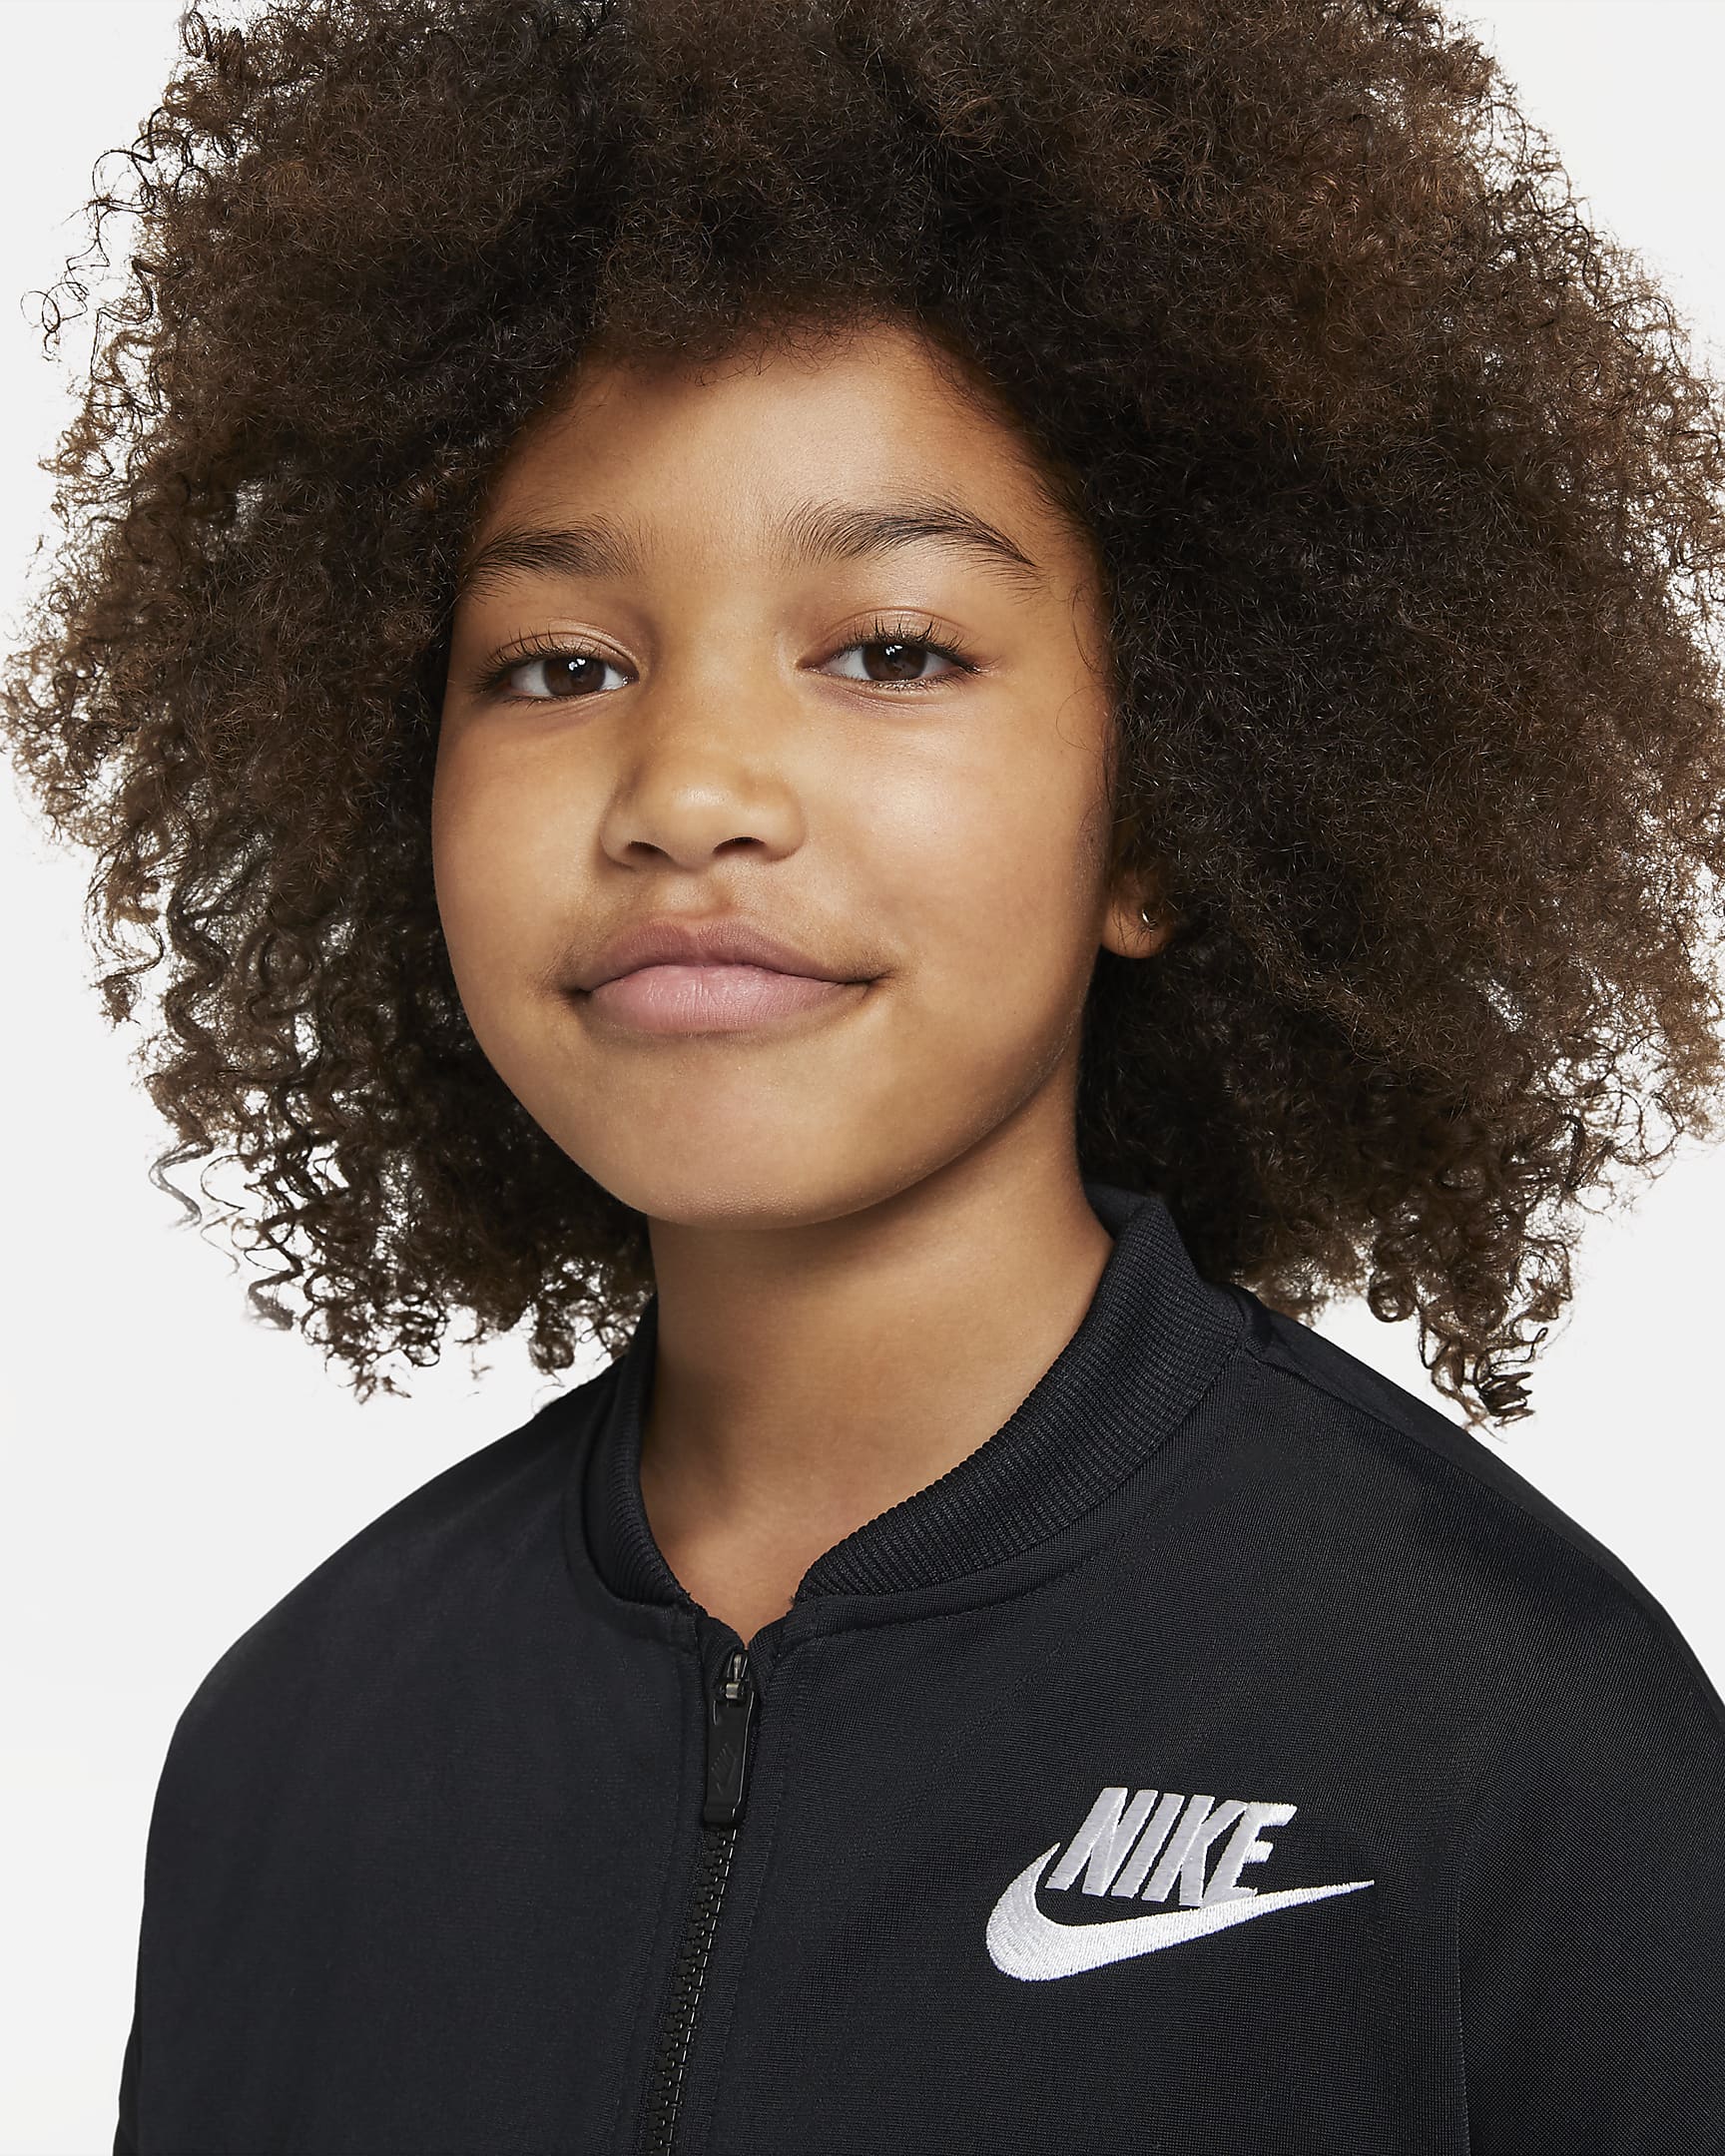 Nike Sportswear Xandall - Nen/a - Negre/Blanc/Blanc